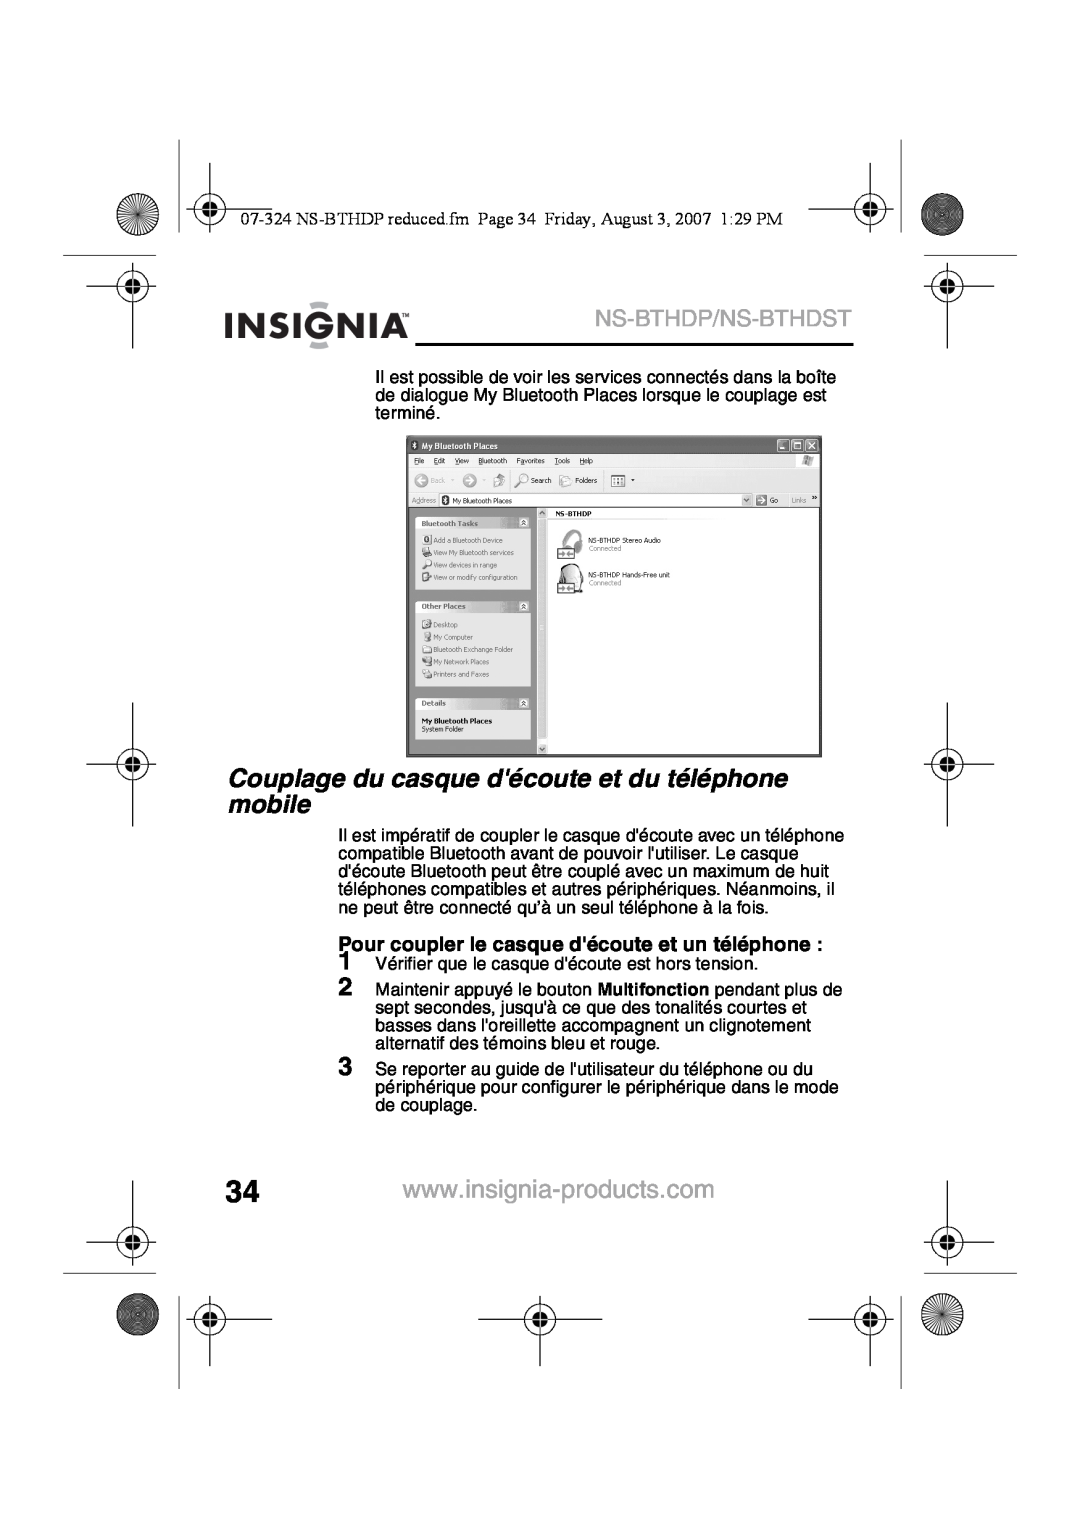 Insignia NS-BTHDST manual Couplage du casque découte et du téléphone mobile, Ns-Bthdp/Ns-Bthdst 